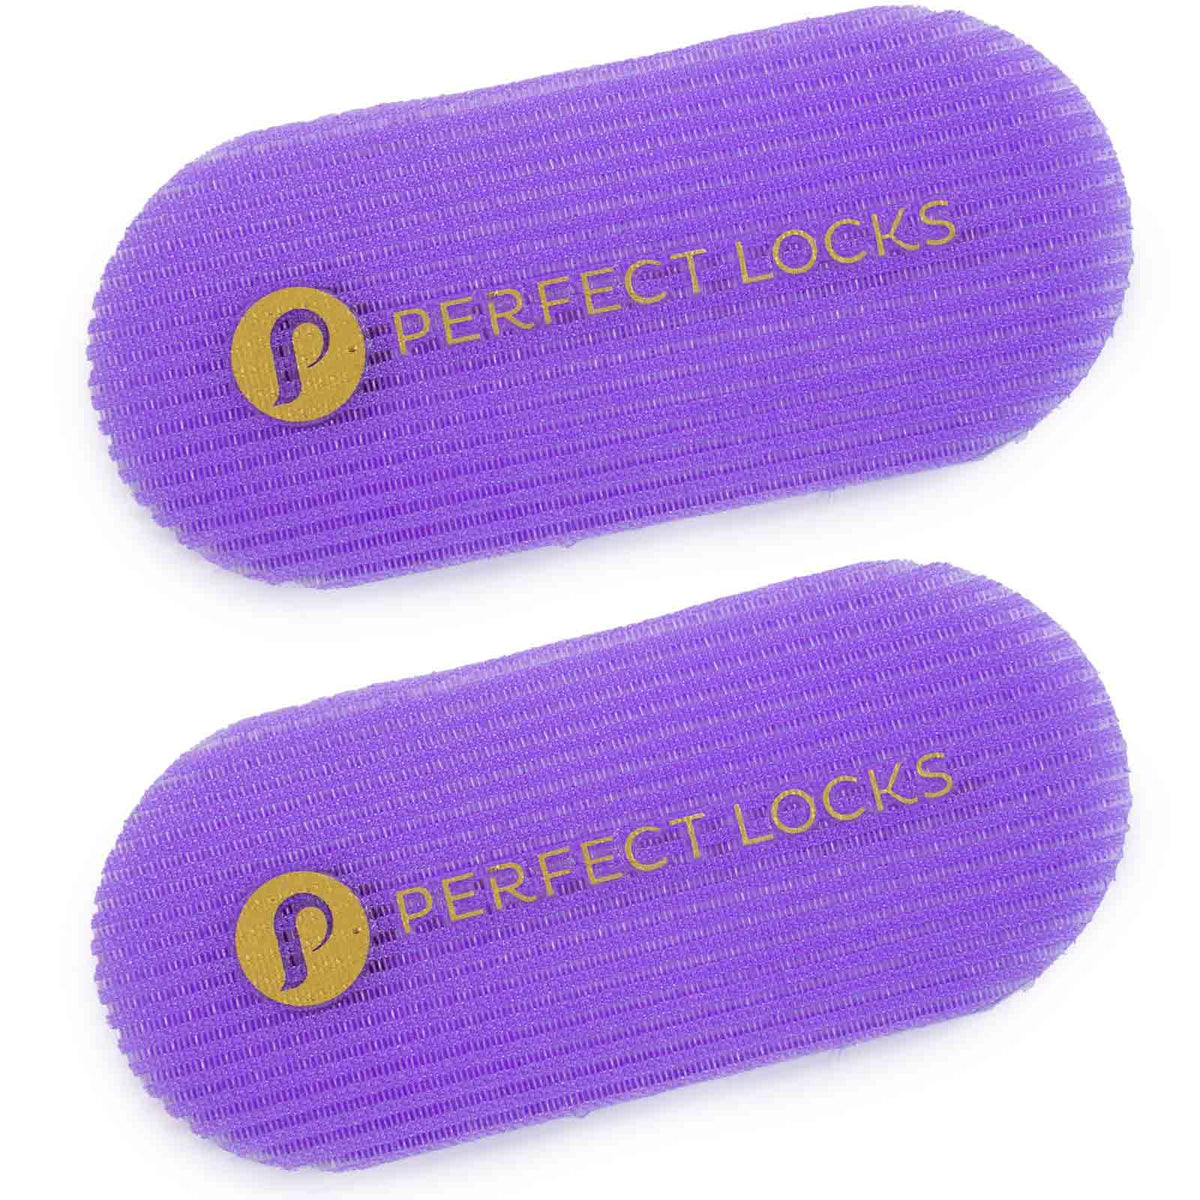 Hair Wax Stick – Perfect Locks